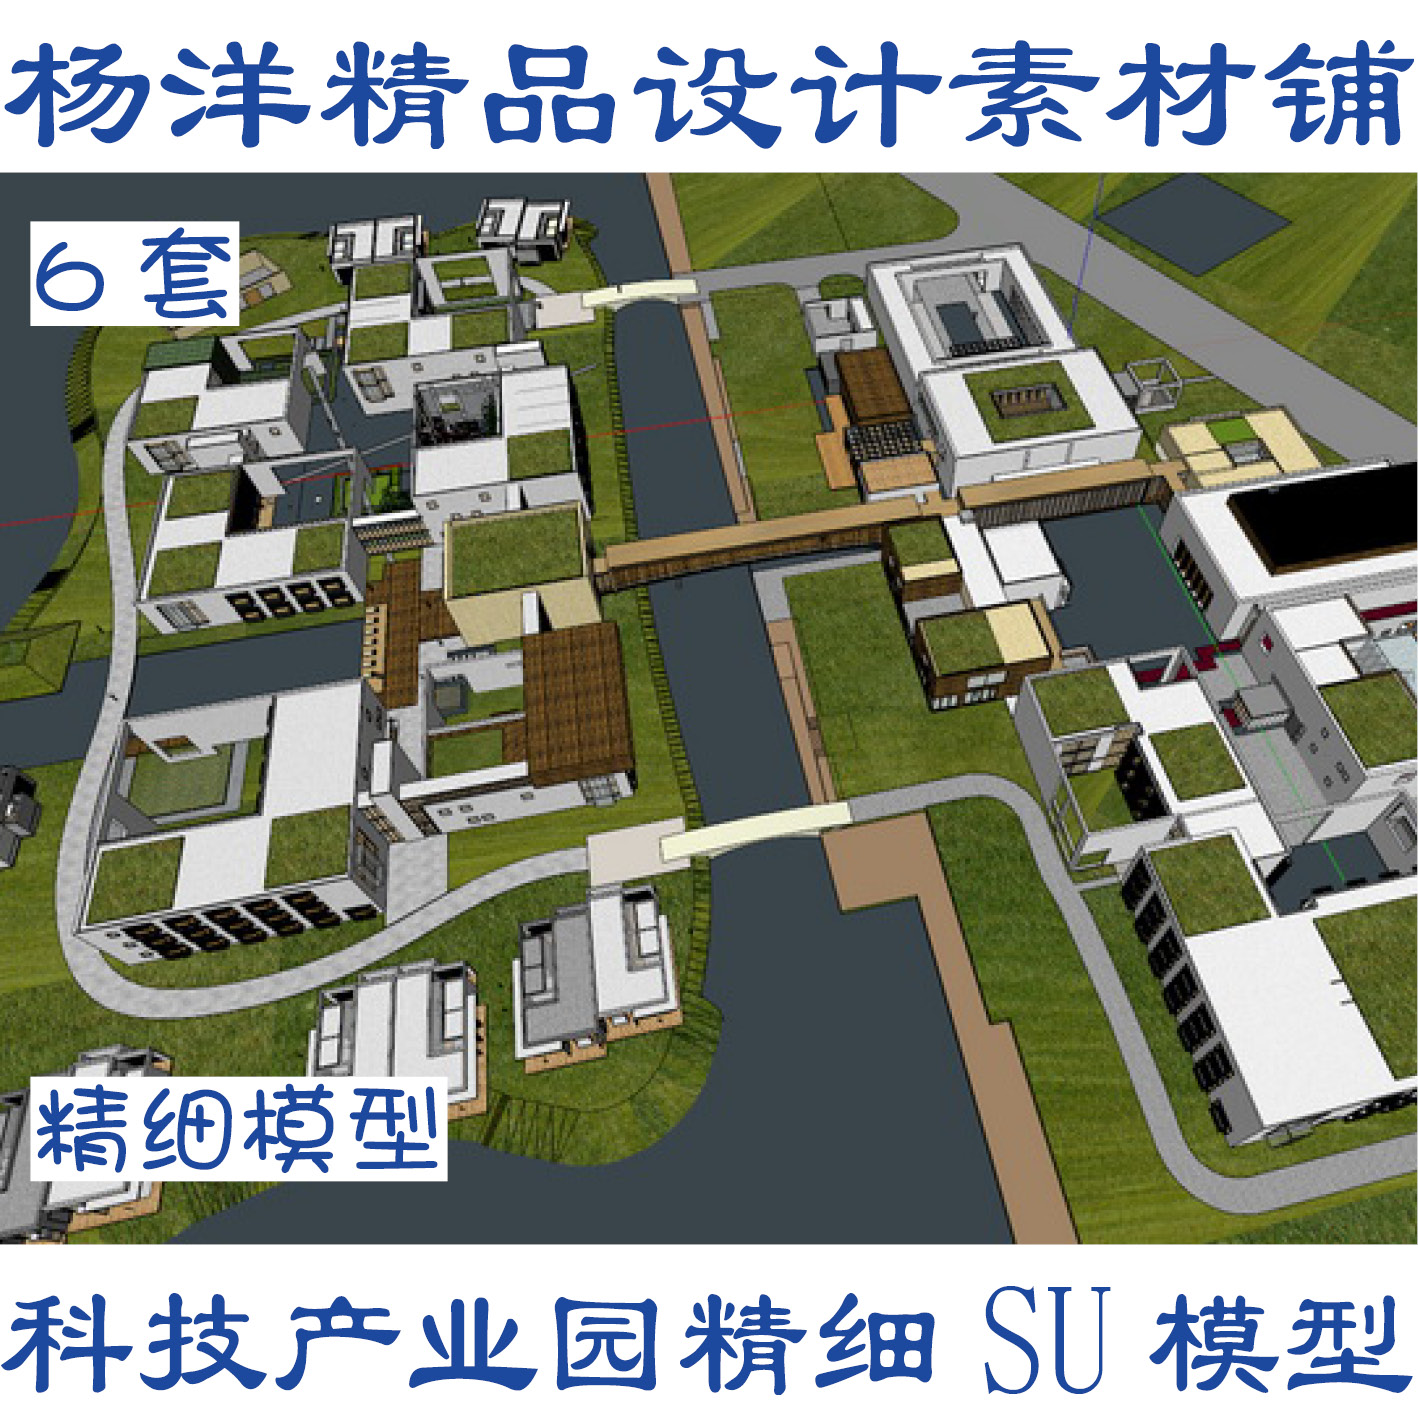 6个大型科技产业园创意文化园规划建筑方案设计SU模型SUCUY06